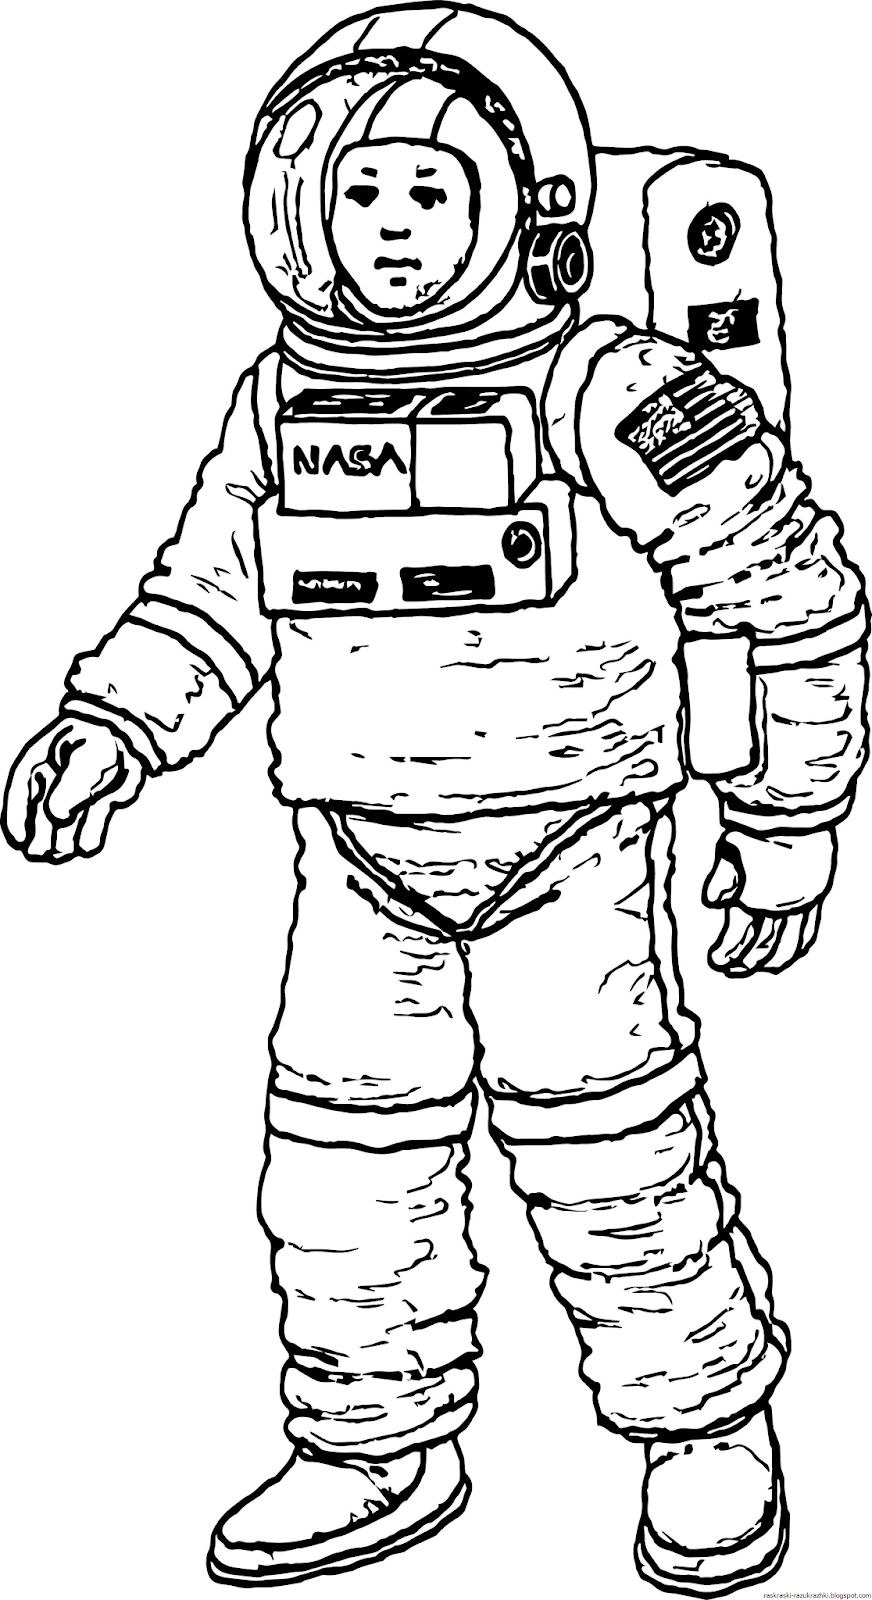 Космонавт раскраска для детей. Раскраска про космос и Космонавтов для детей. Космонавт рисунок. Рисунок Космонавта в скафандре для детей. Как нарисовать космонавта в космосе